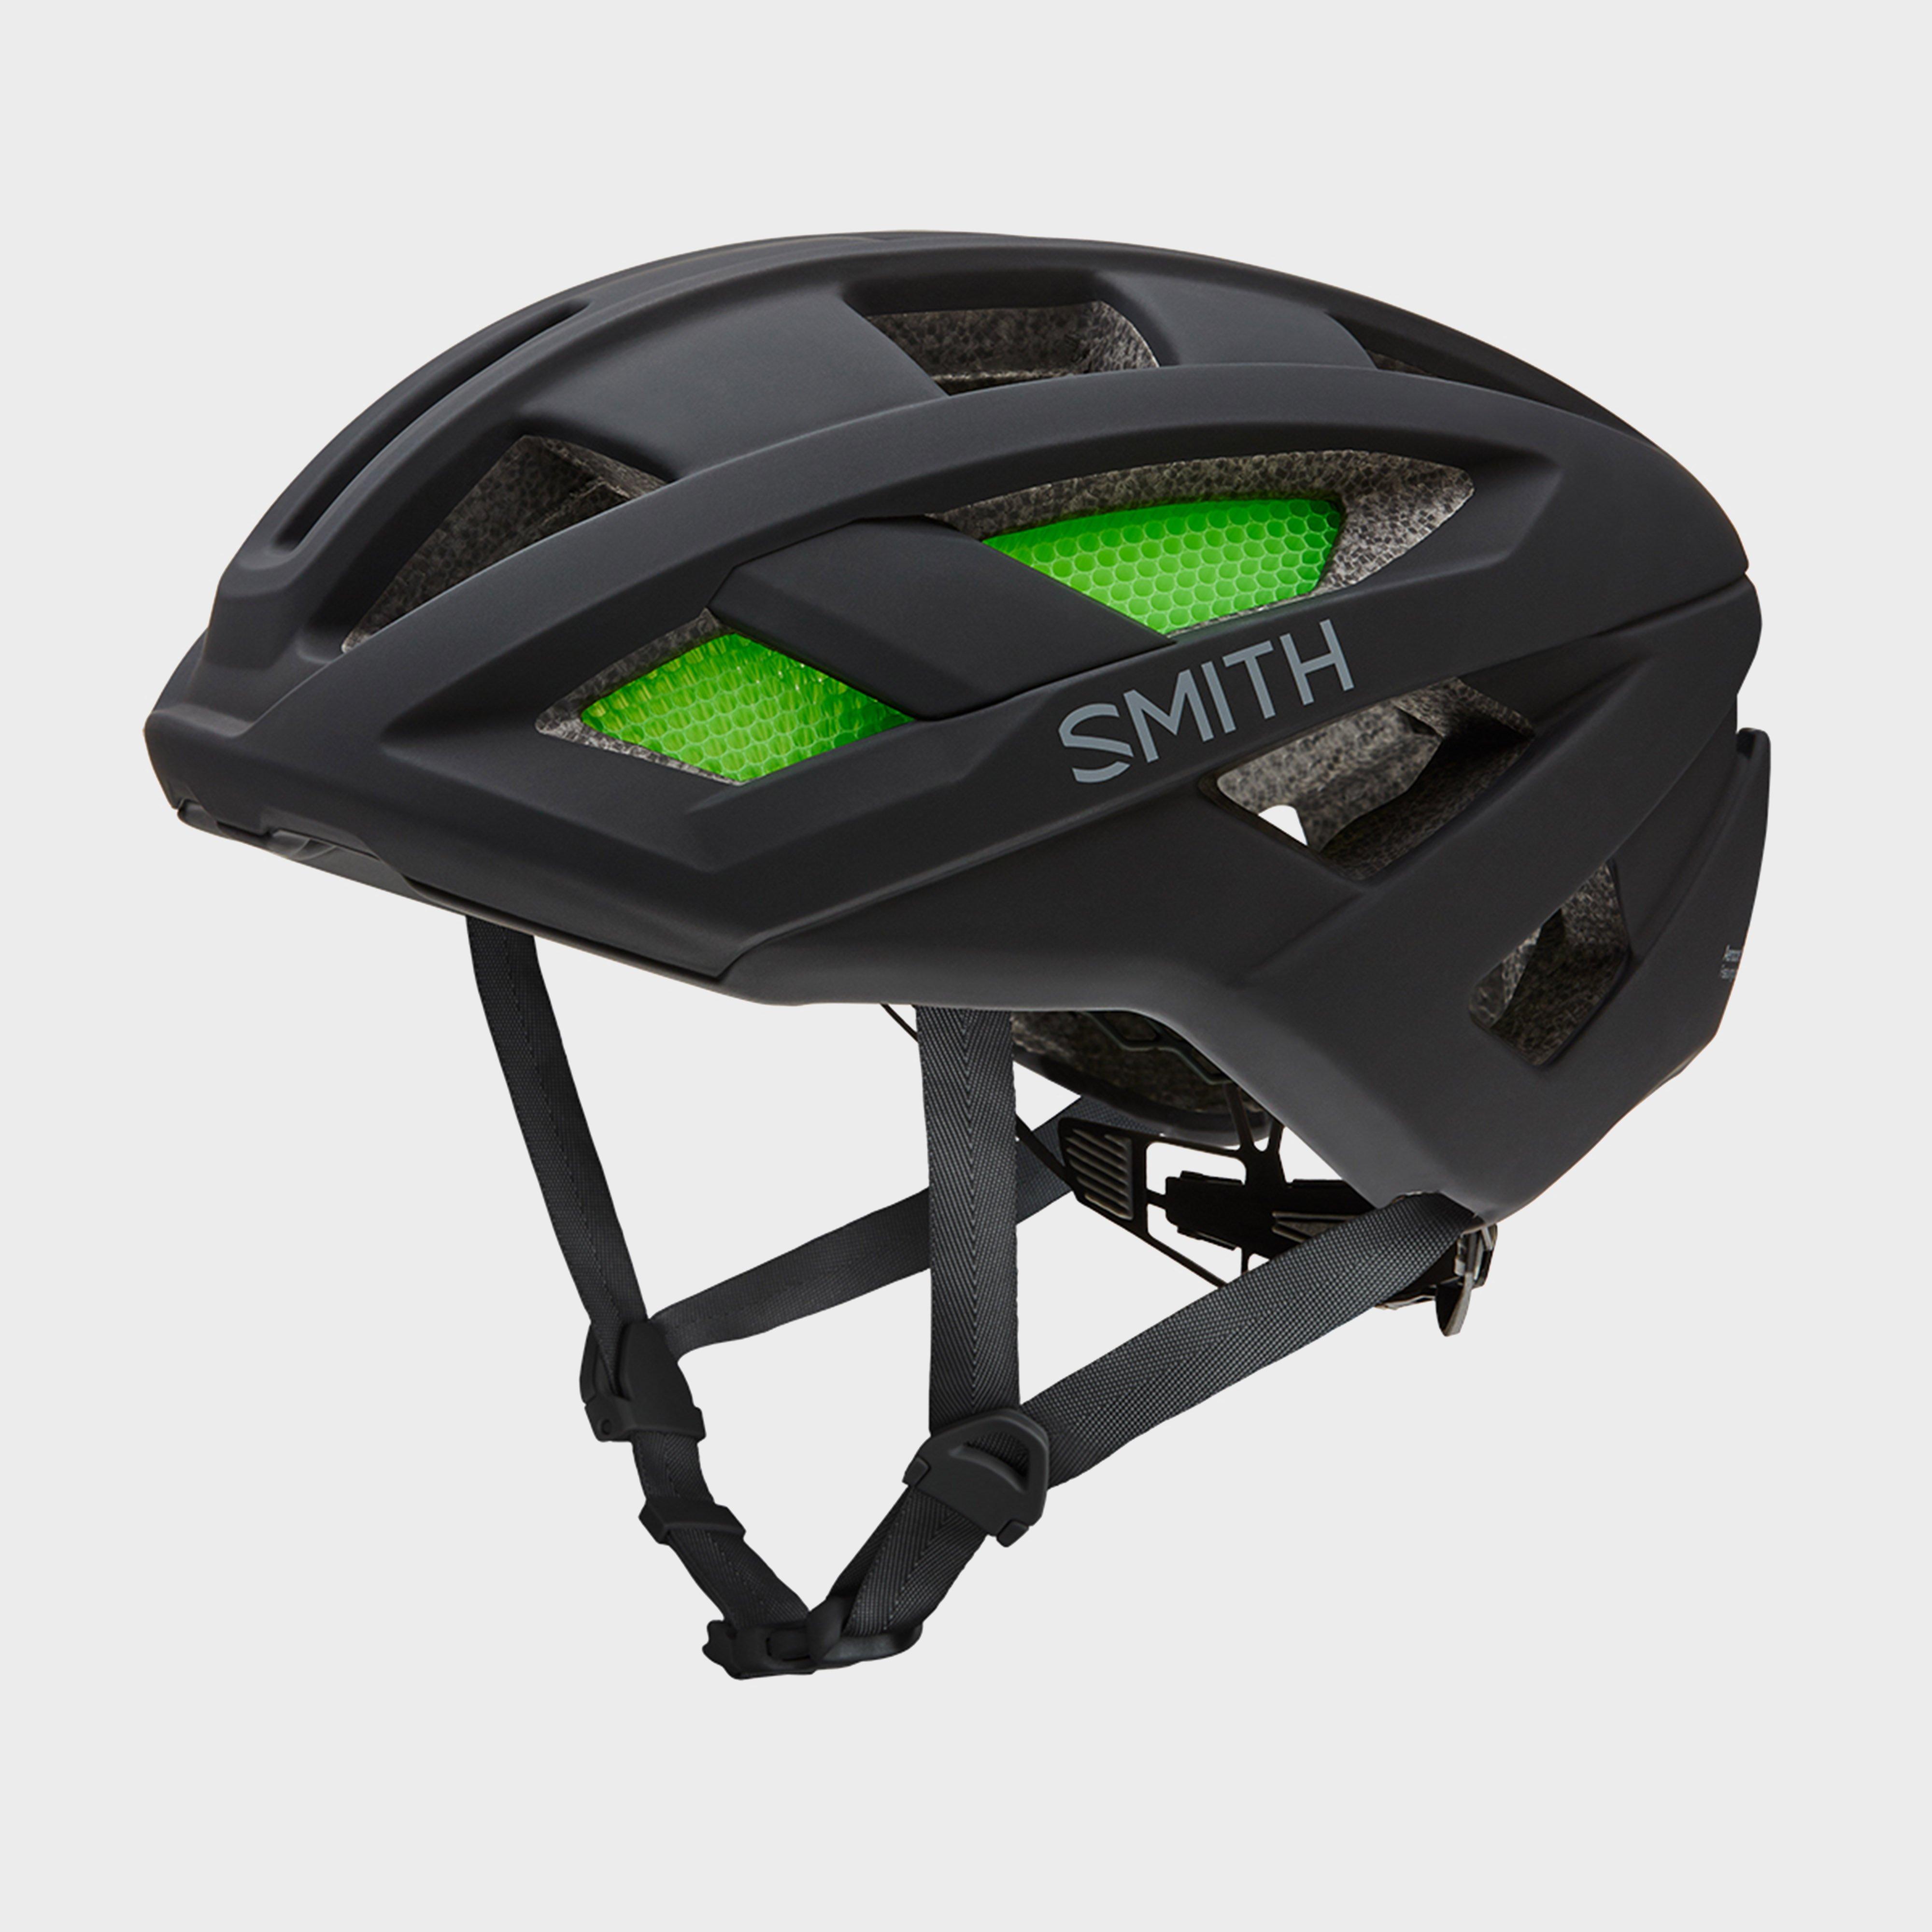 Blacks Smith Route Helmet